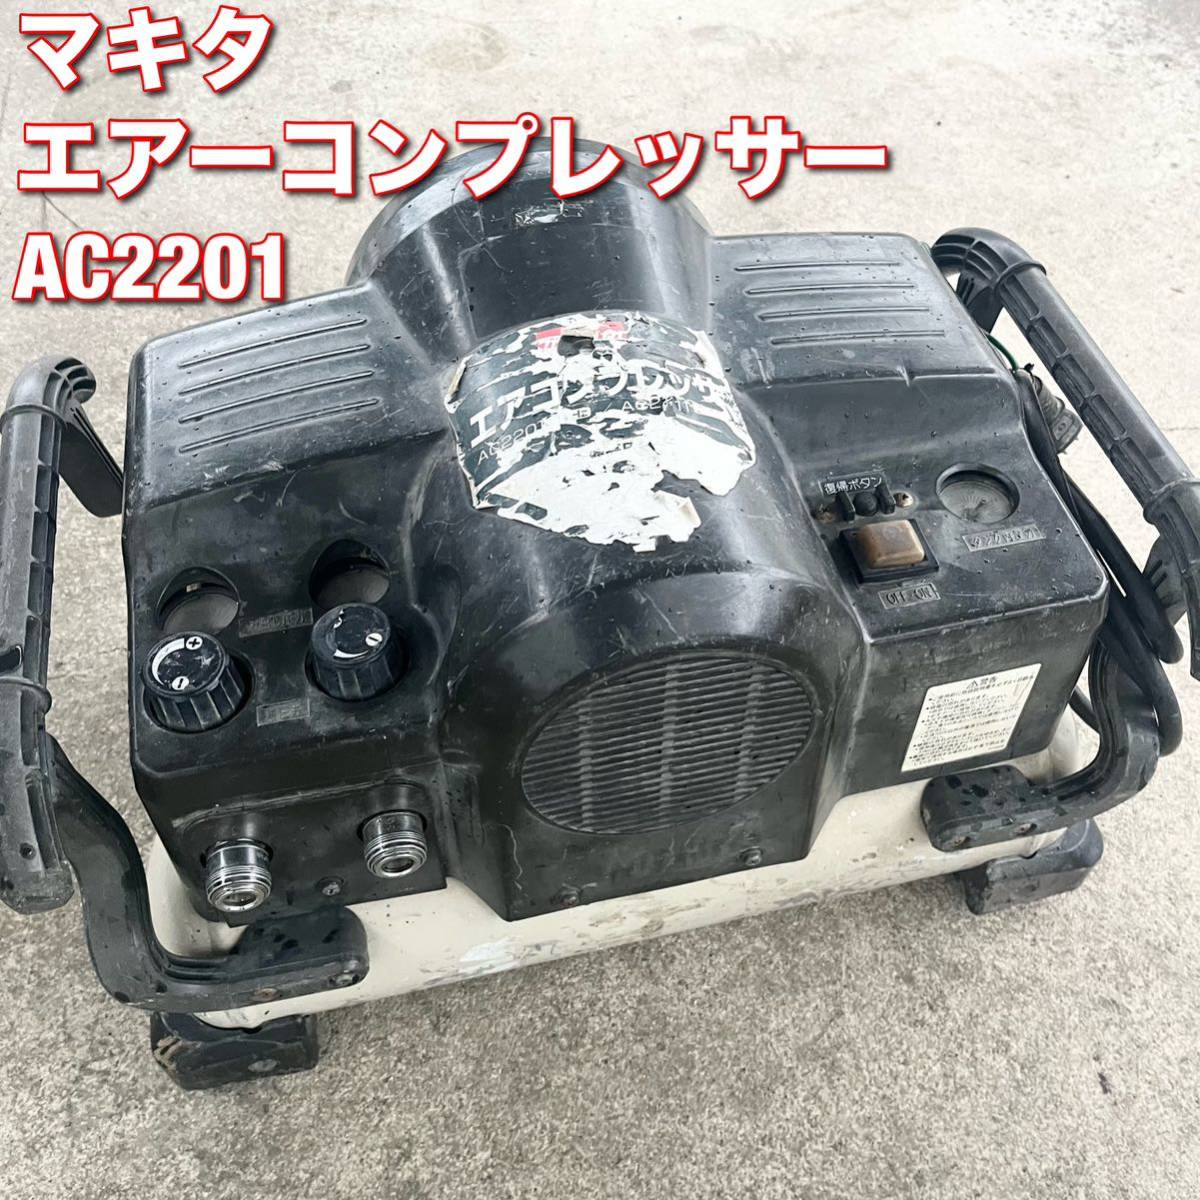 マキタ エアーコンプレッサー 工具 AC2201 makita 総理無料